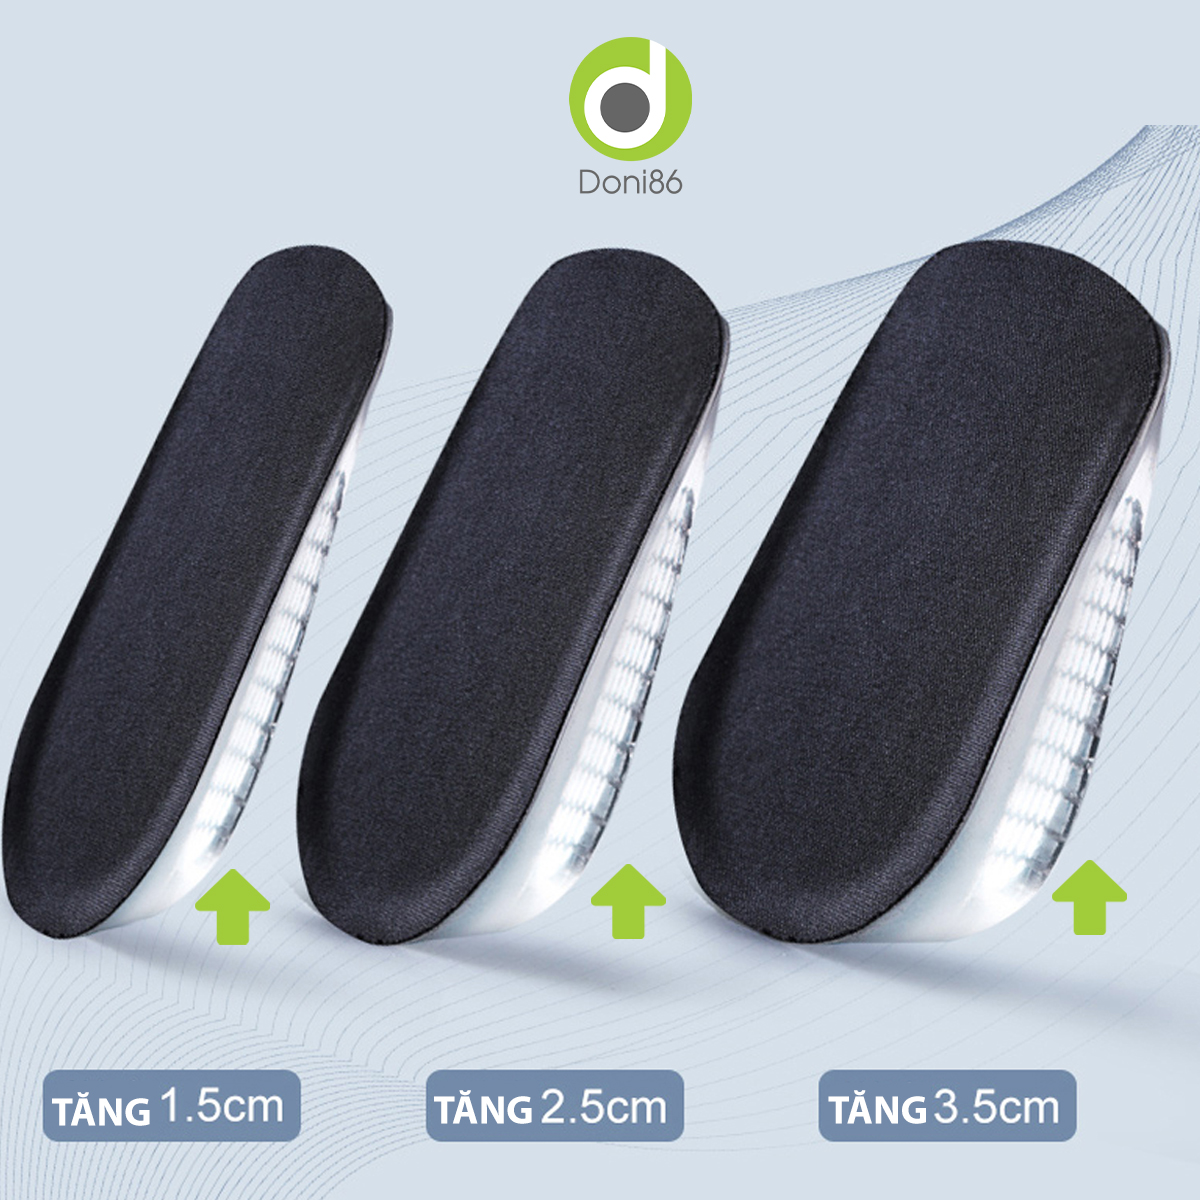 Một cặp lót giày độn đế đúc bằng silicone nguyên khối, tăng 1.5cm, 2.5cm, 3.5cm chiều cao - Doni - DOPK217